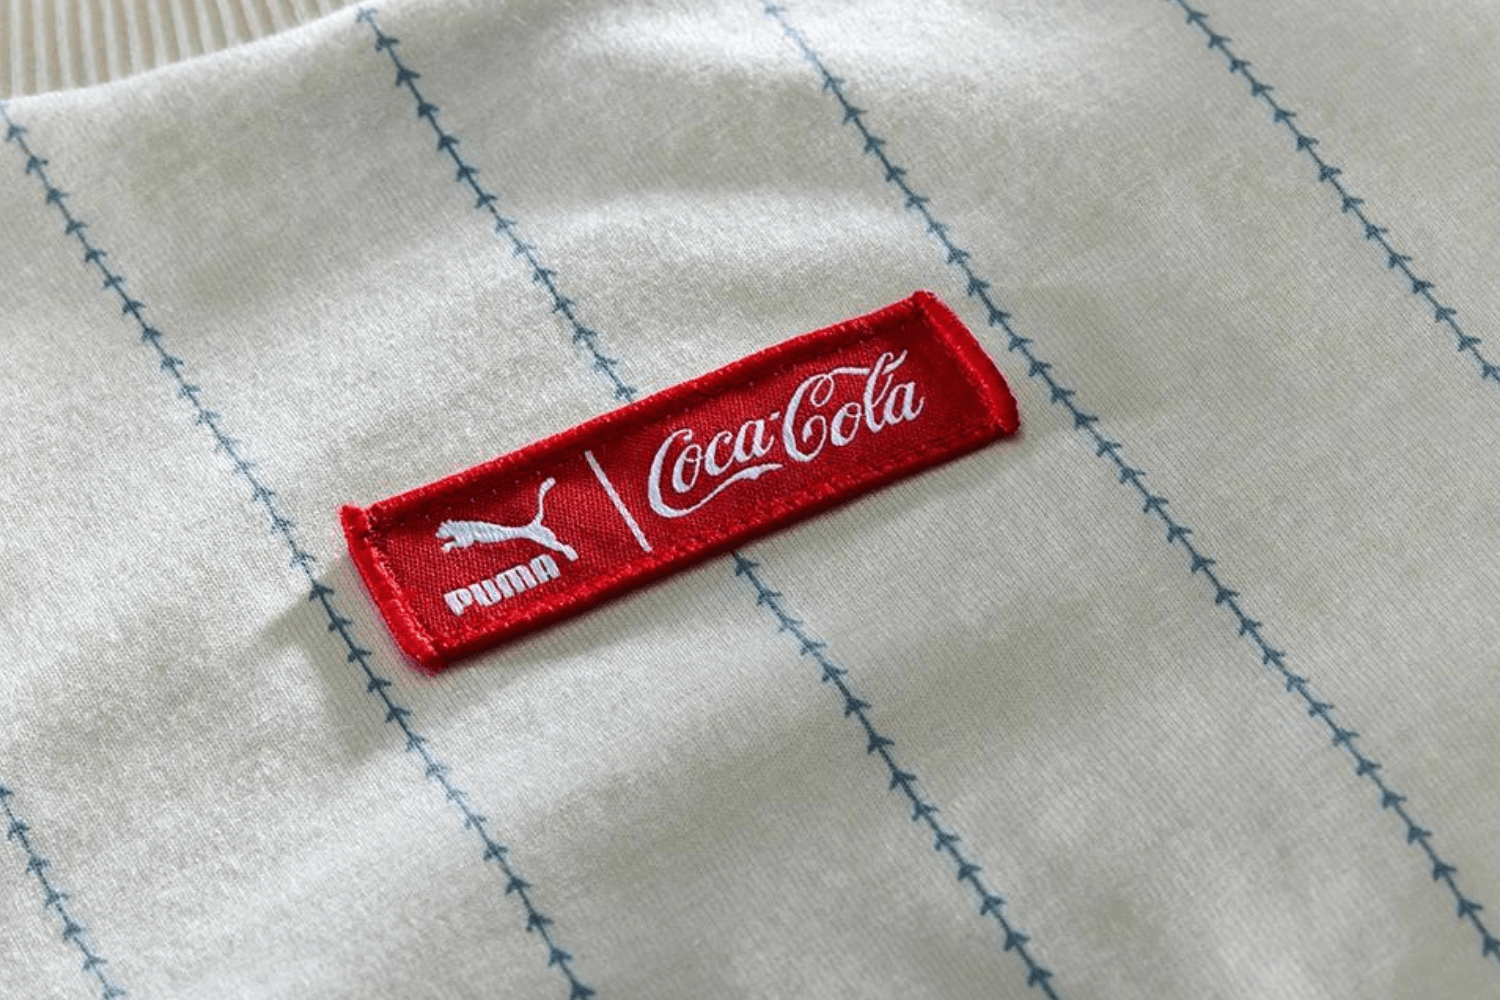 Coca-Cola werkt samen met PUMA voor nostalgische collectie